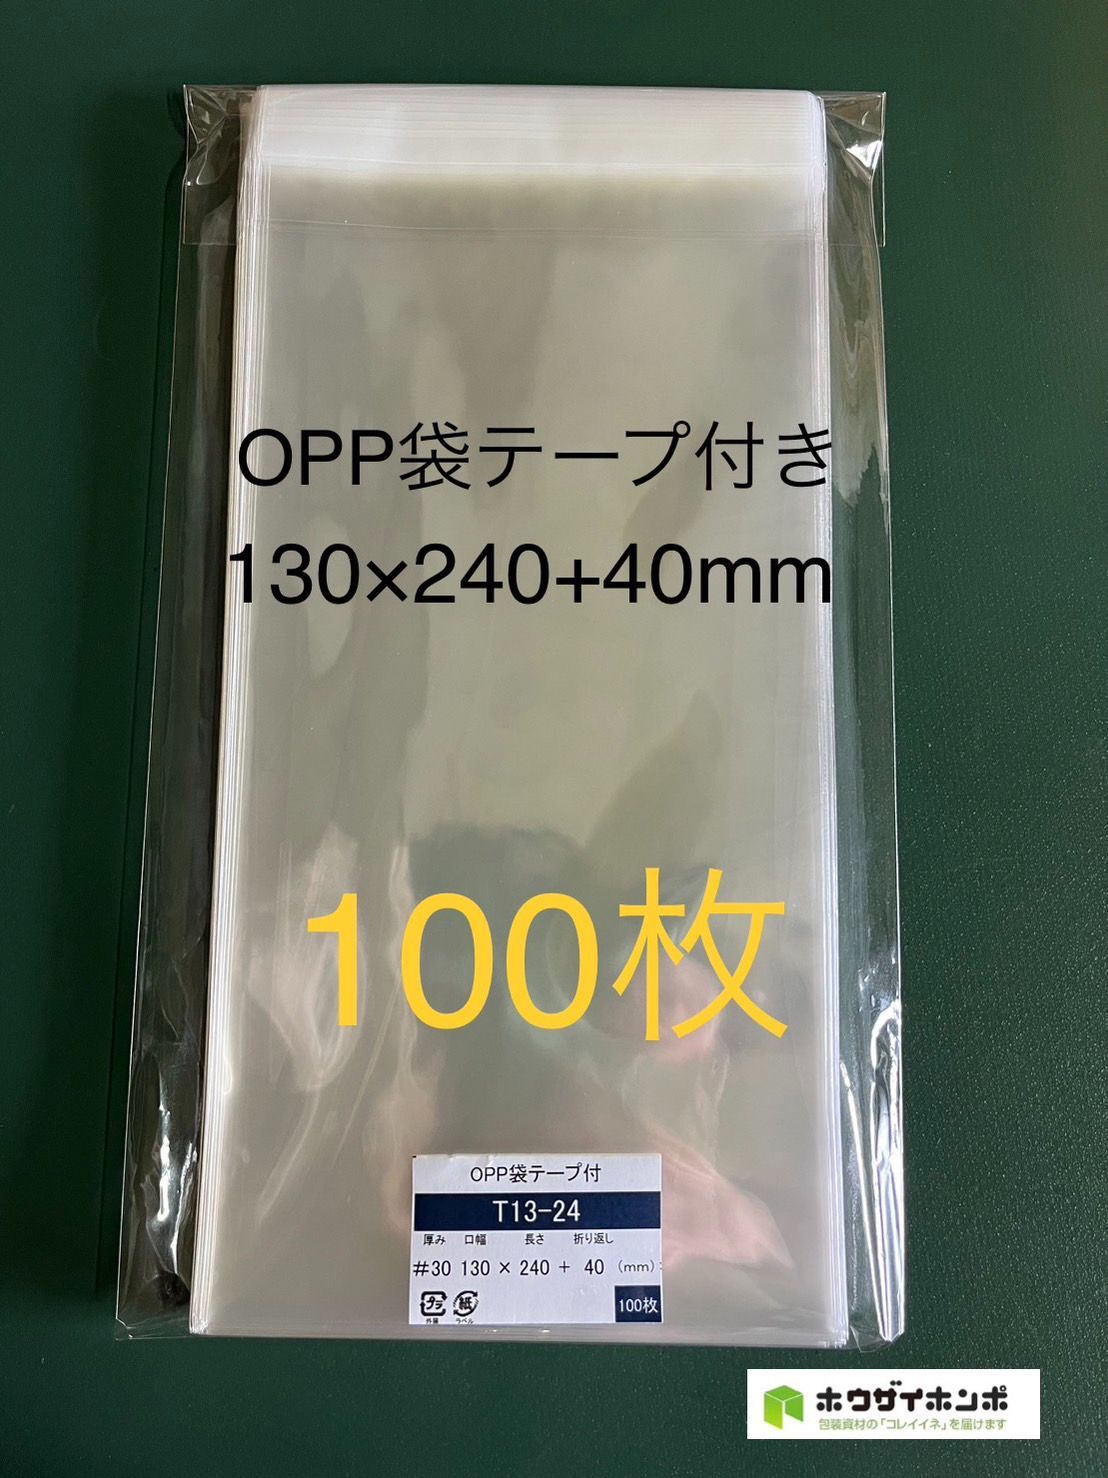 OPP袋 テープ付 100枚 130x240mm T13-24 [M便 5]